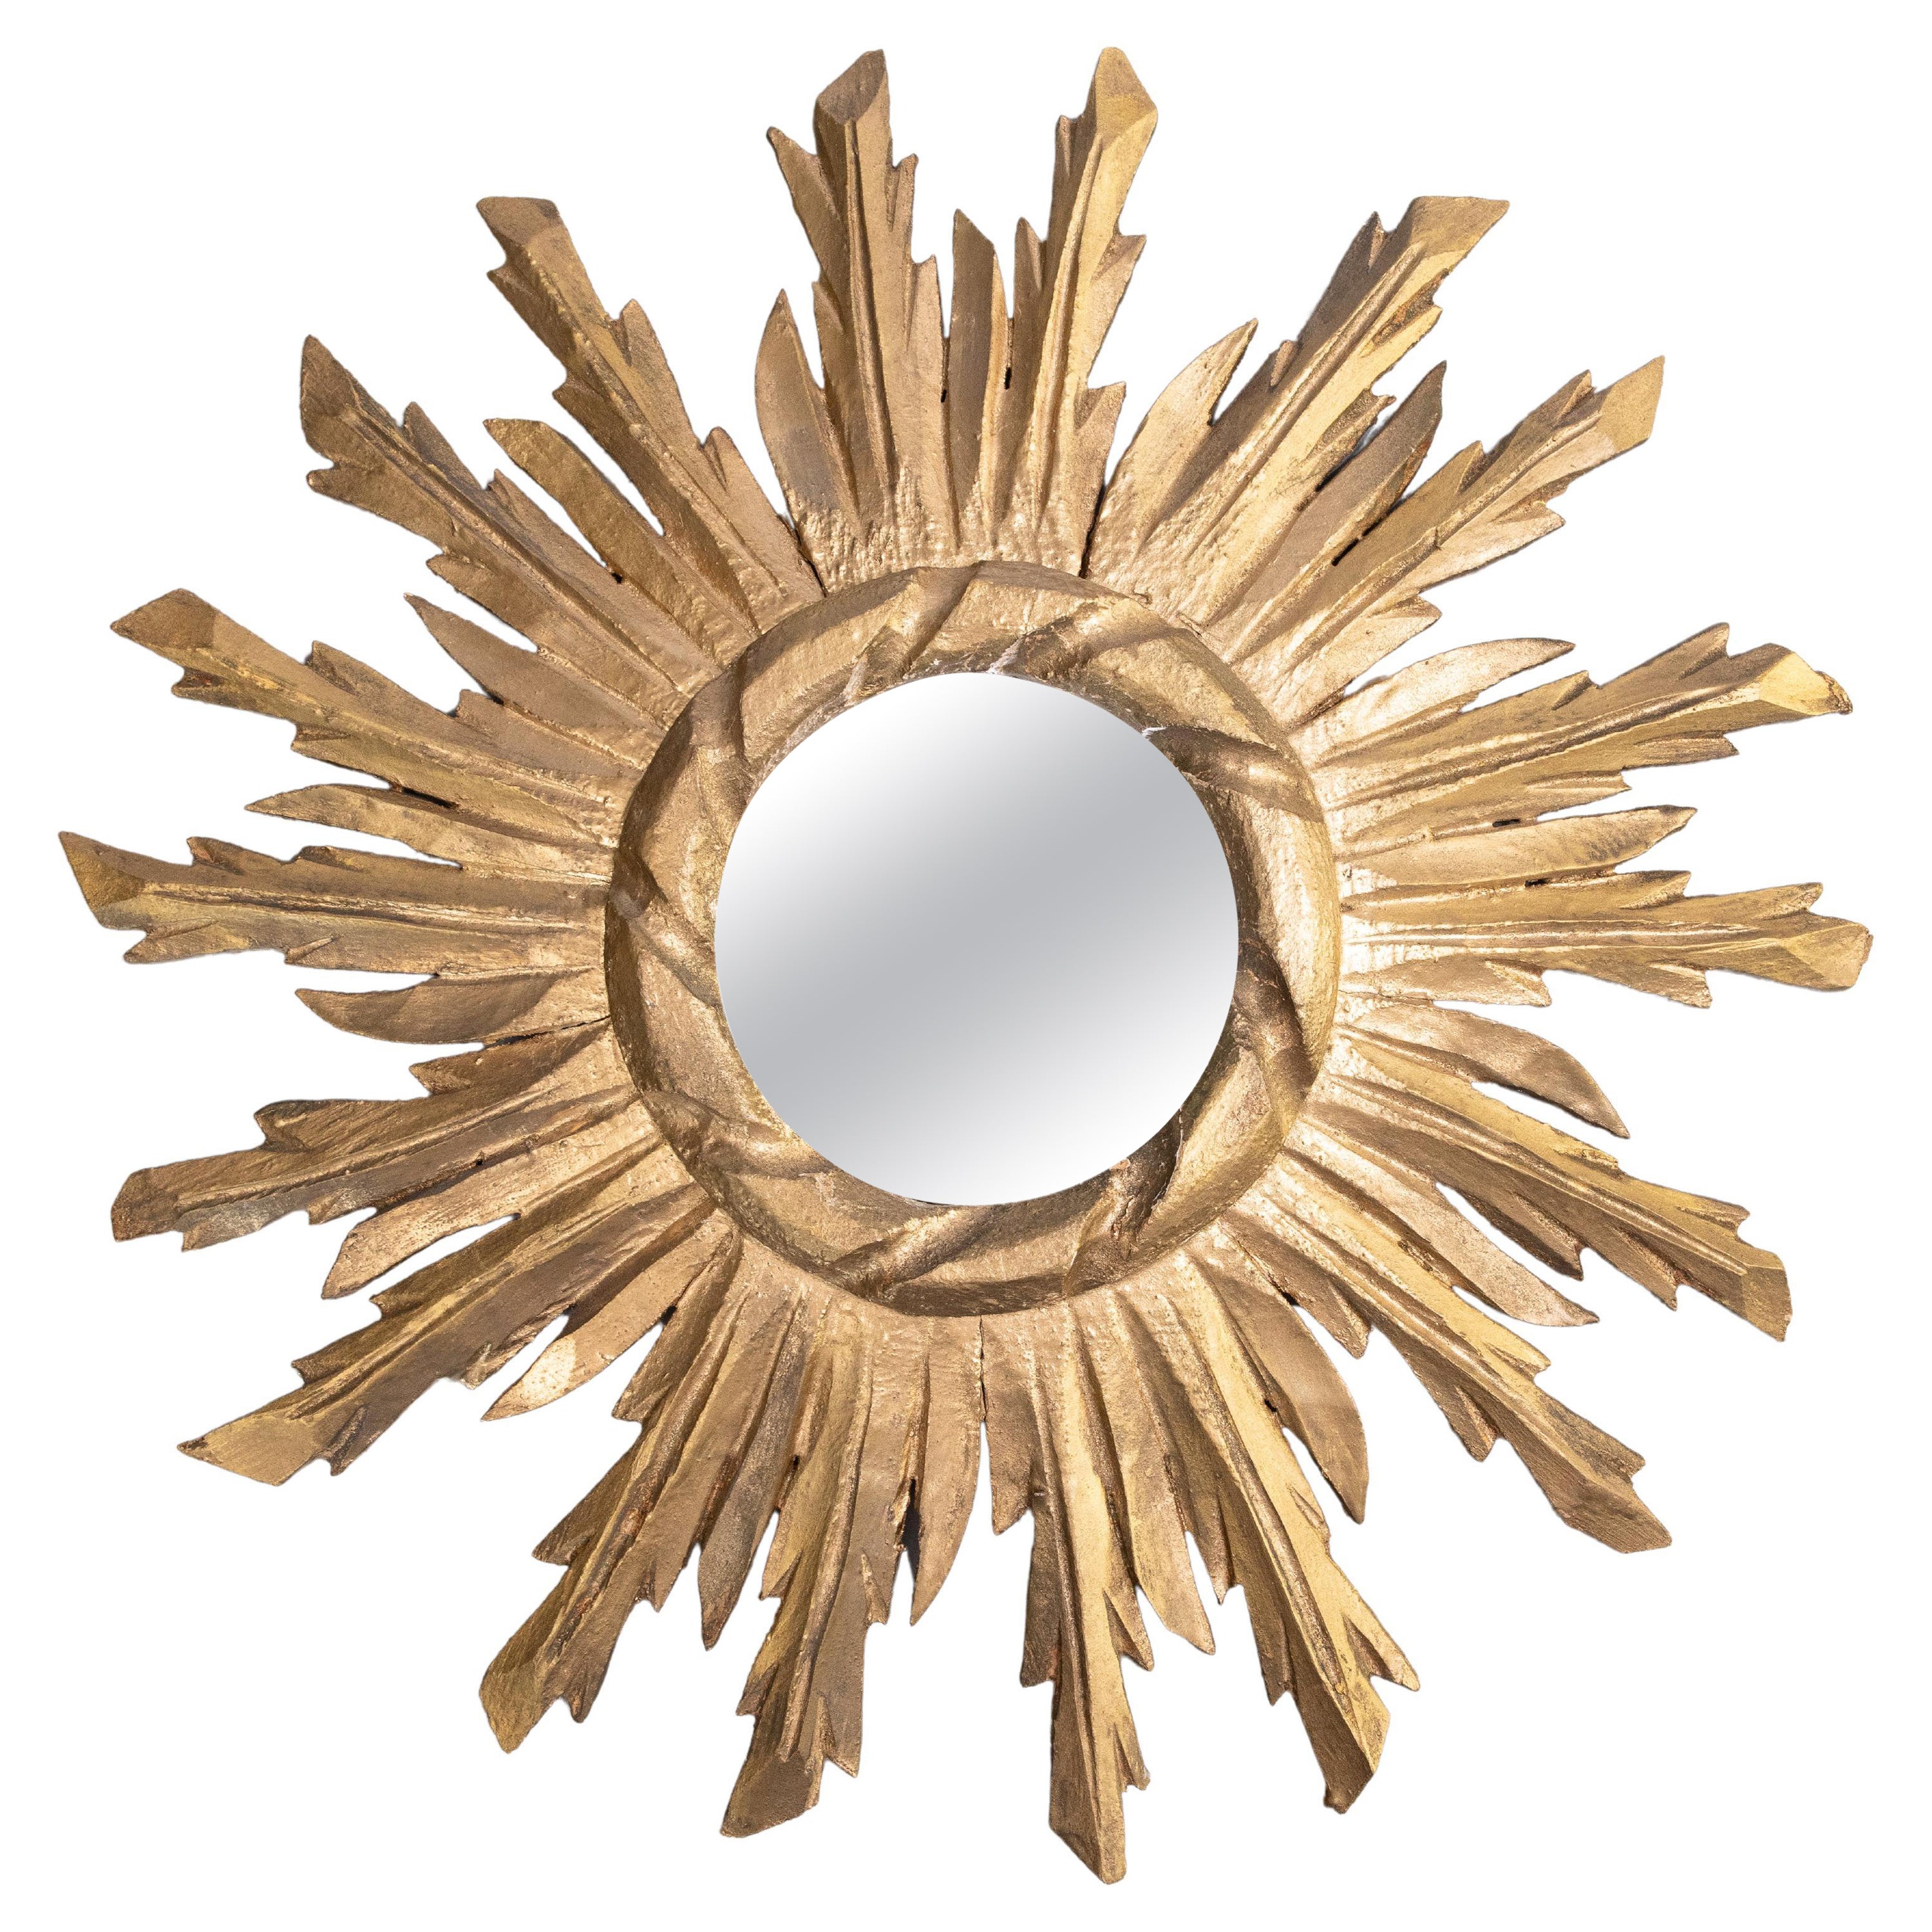 Miroir convexe en bois doré à rayons de soleil et étoiles, milieu du XXe siècle